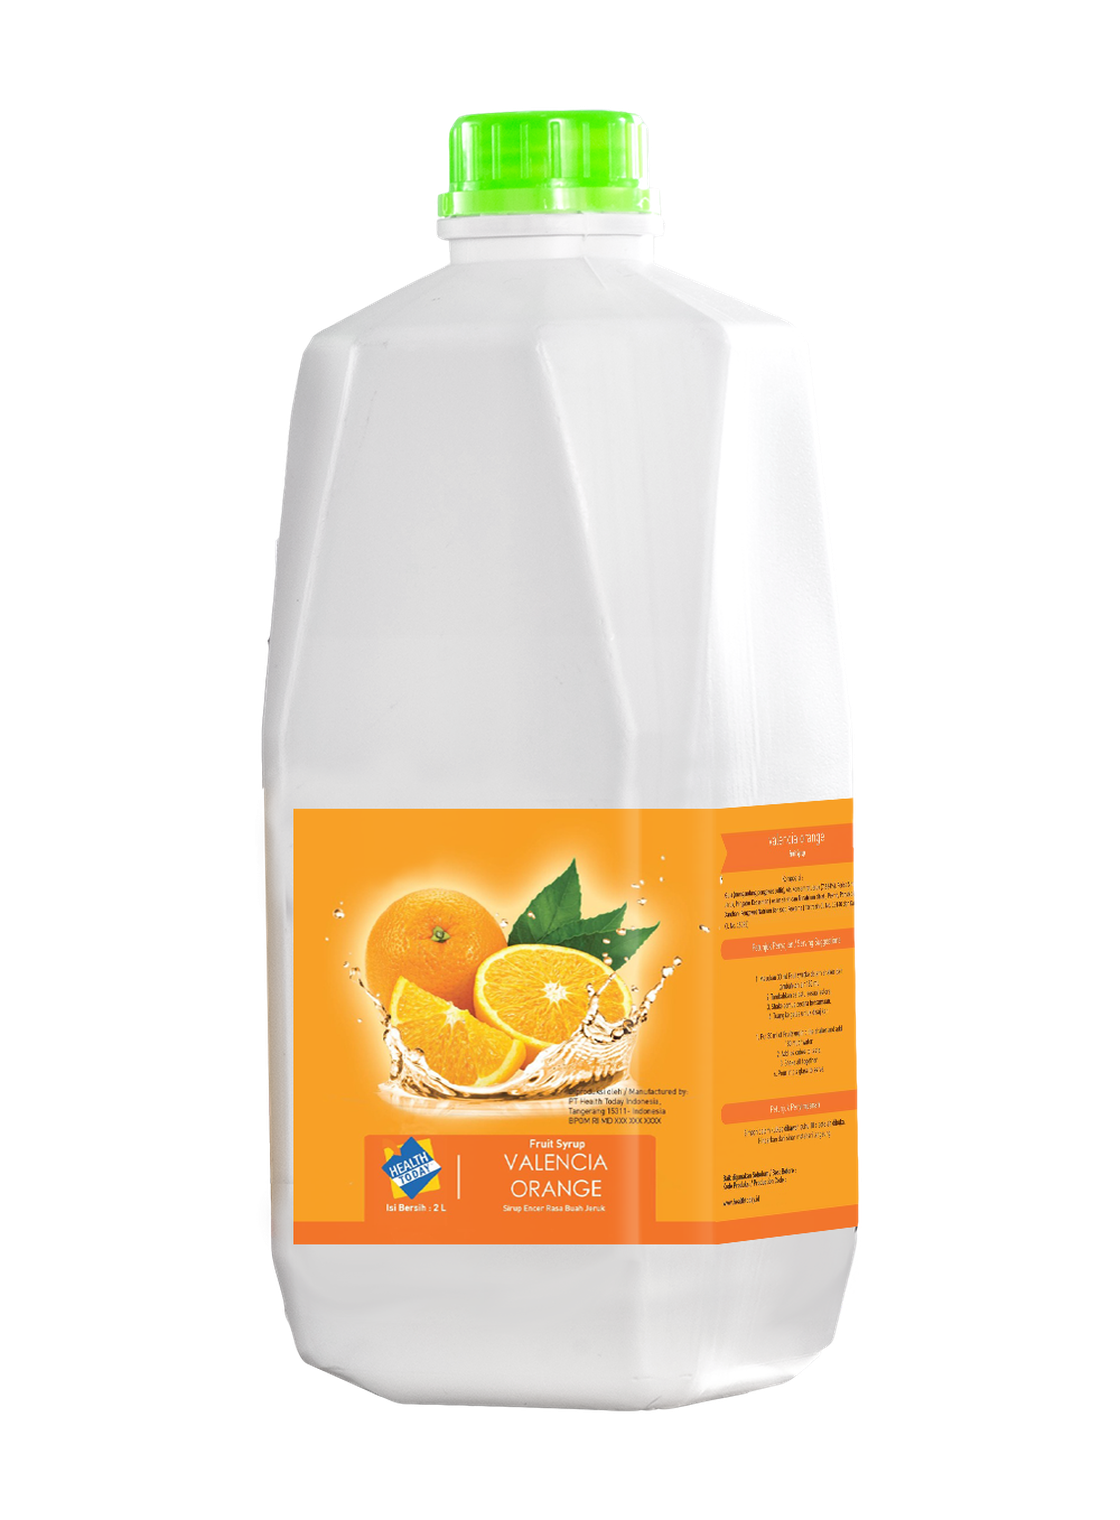 20 ml Health Today Valencia Orange Fruit Mix